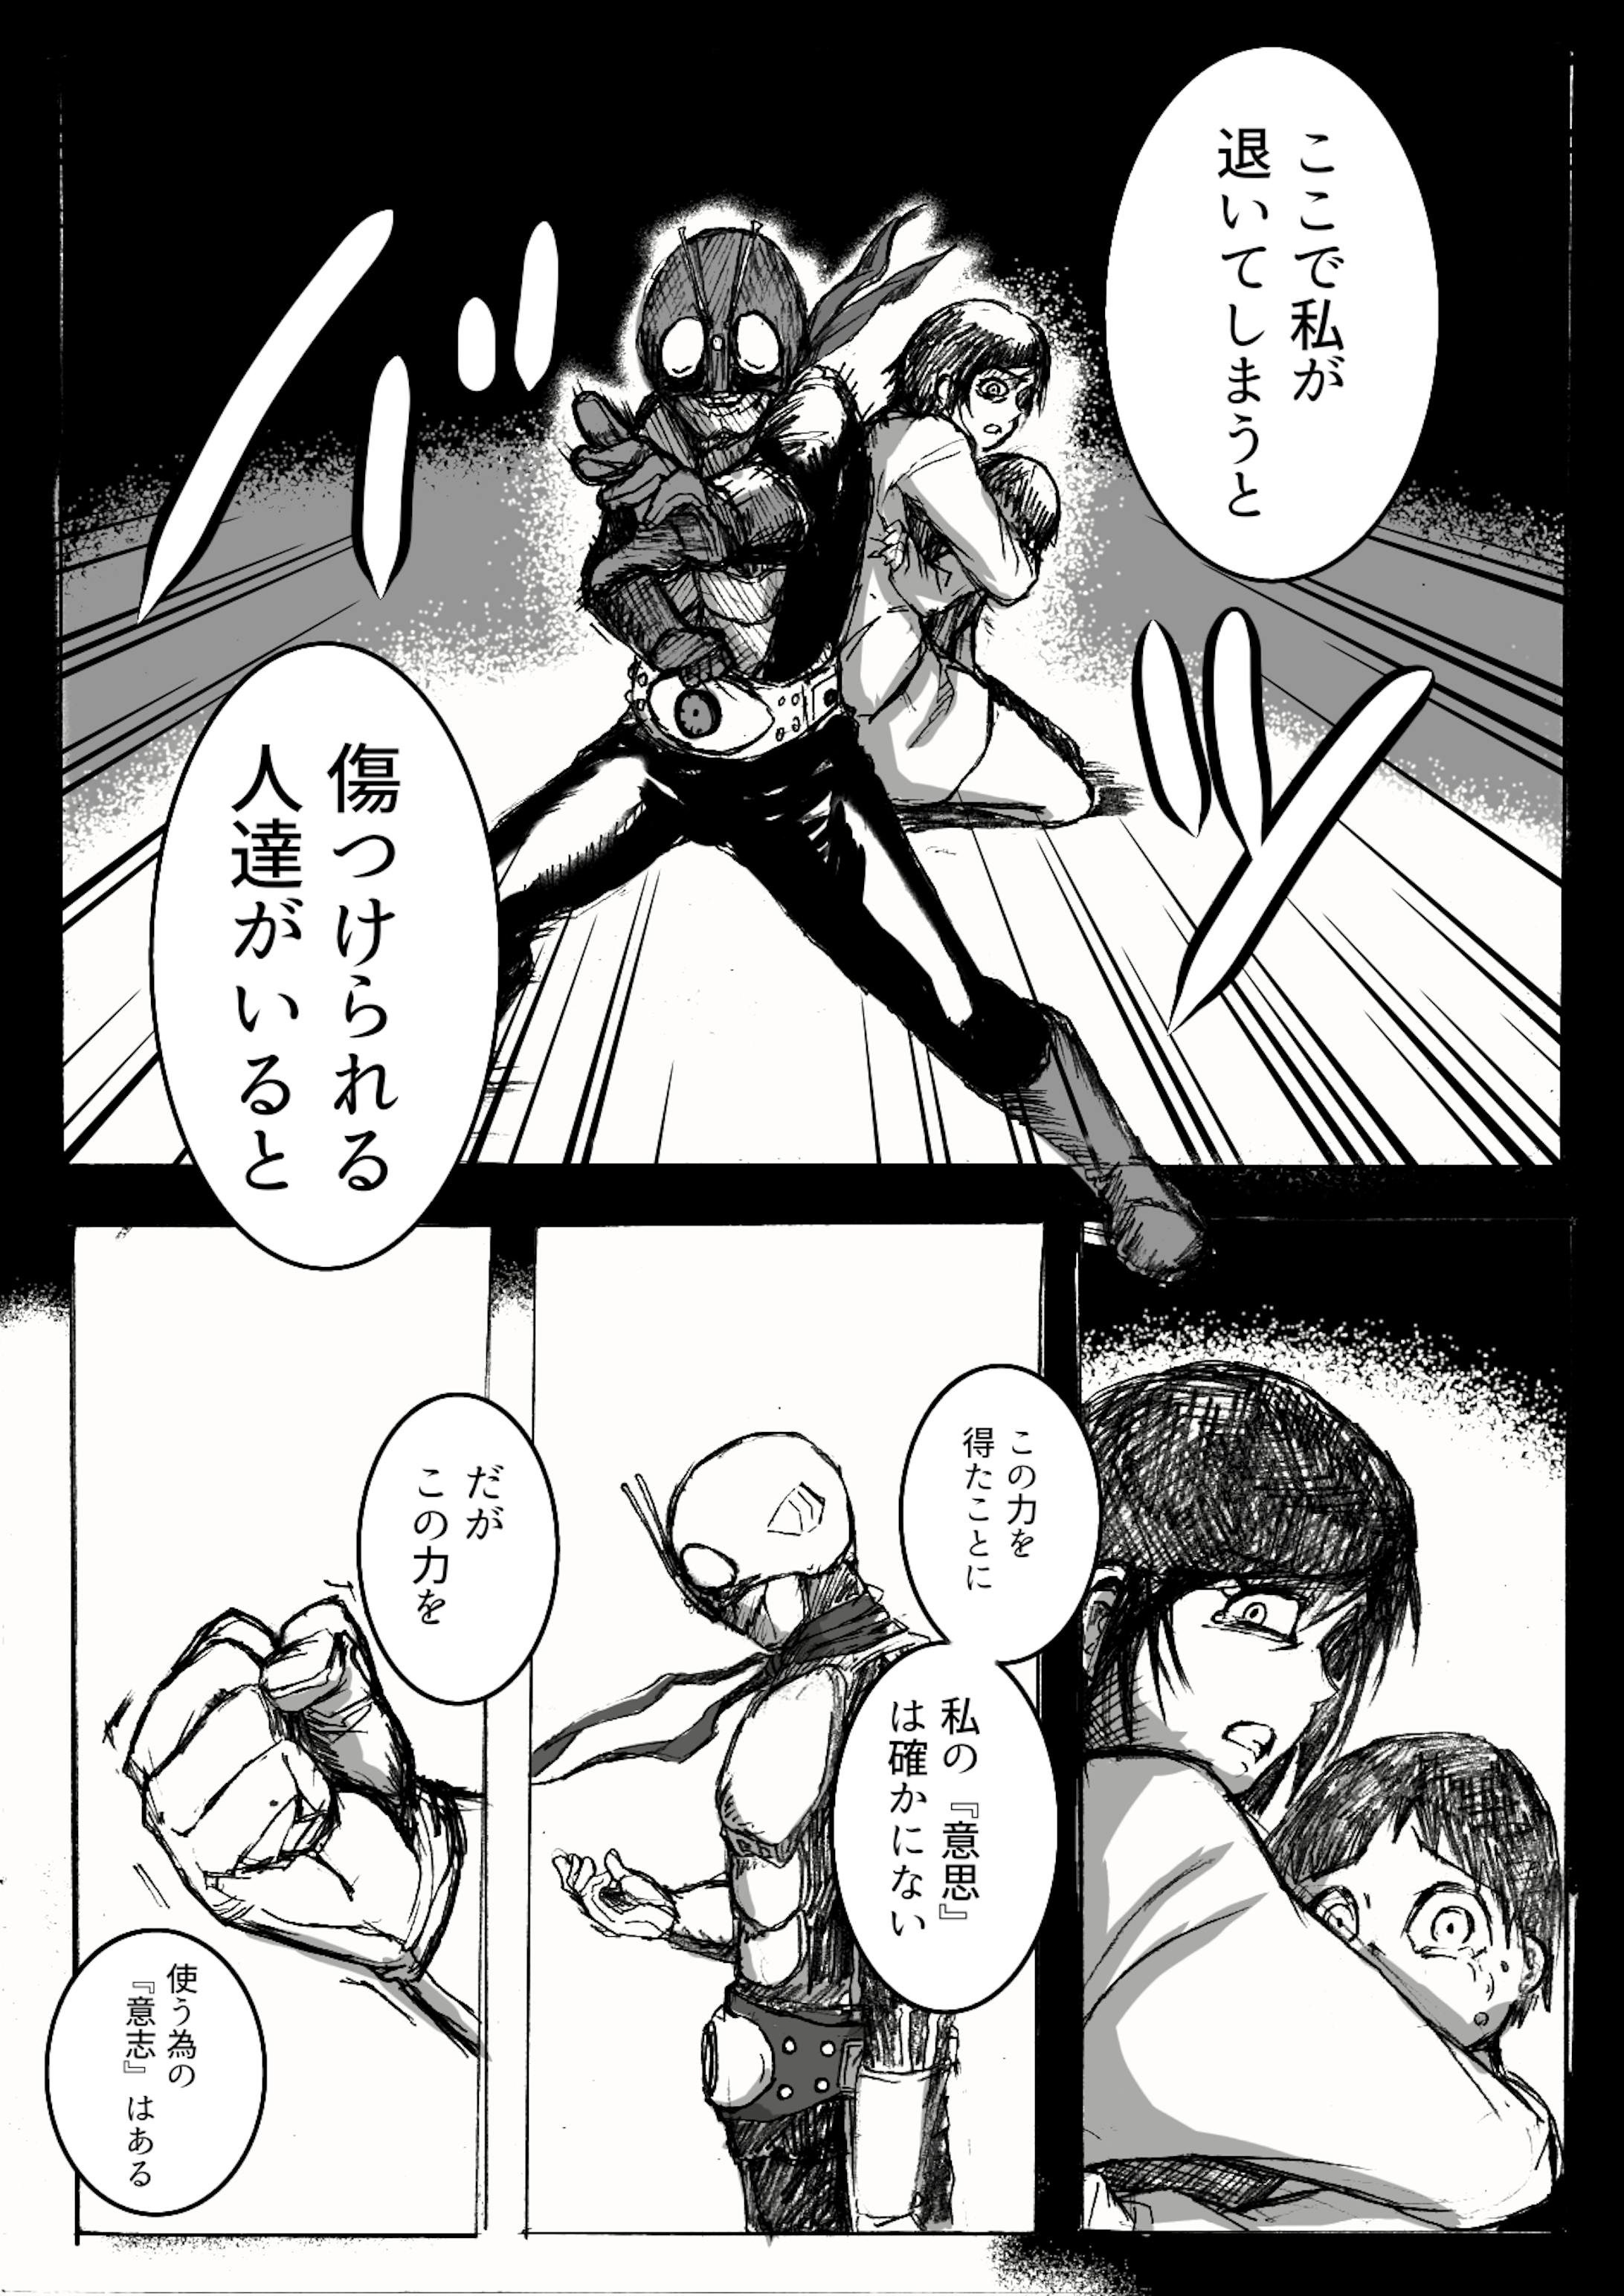 Kmen Rider Zero-one Manga-3